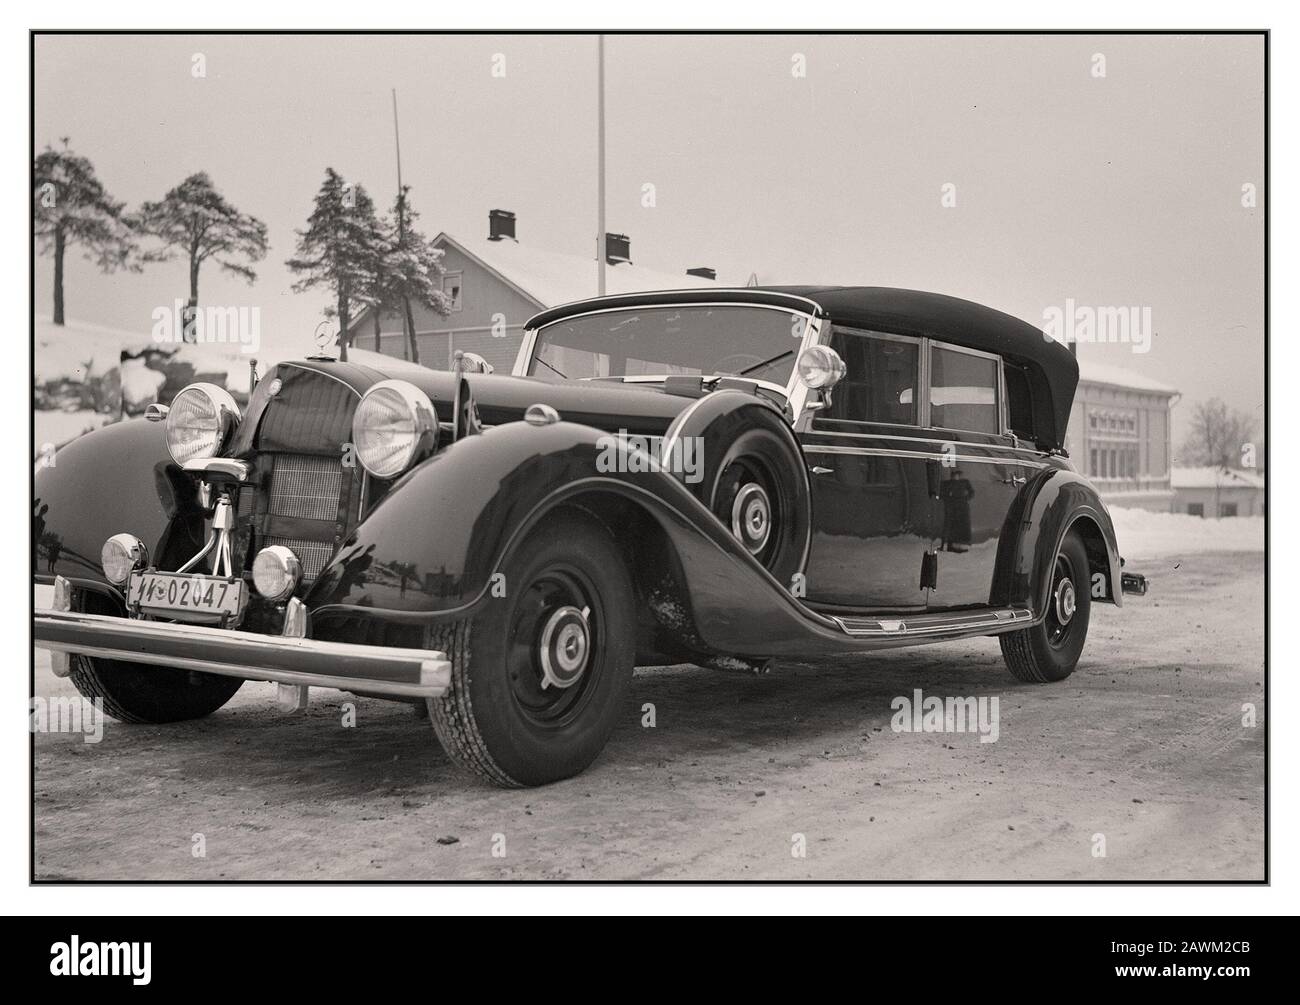 Mercedes 770K, une voiture de limousine convertible allemande de la deuxième Guerre mondiale des années 1940 en Finlande. Adolf Hitlers cadeau à Marshall Carl Gustaf Mannerheim, le chef finlandais de l'époque de la guerre, à l'occasion de son 75ème anniversaire. Mikkeli Finlande 1941 Il a été donné à Mannerheim dans l'espoir d'une plus grande coopération entre l'Allemagne nazie et la Finlande, mais comme l'histoire l'a été en vain. Banque D'Images